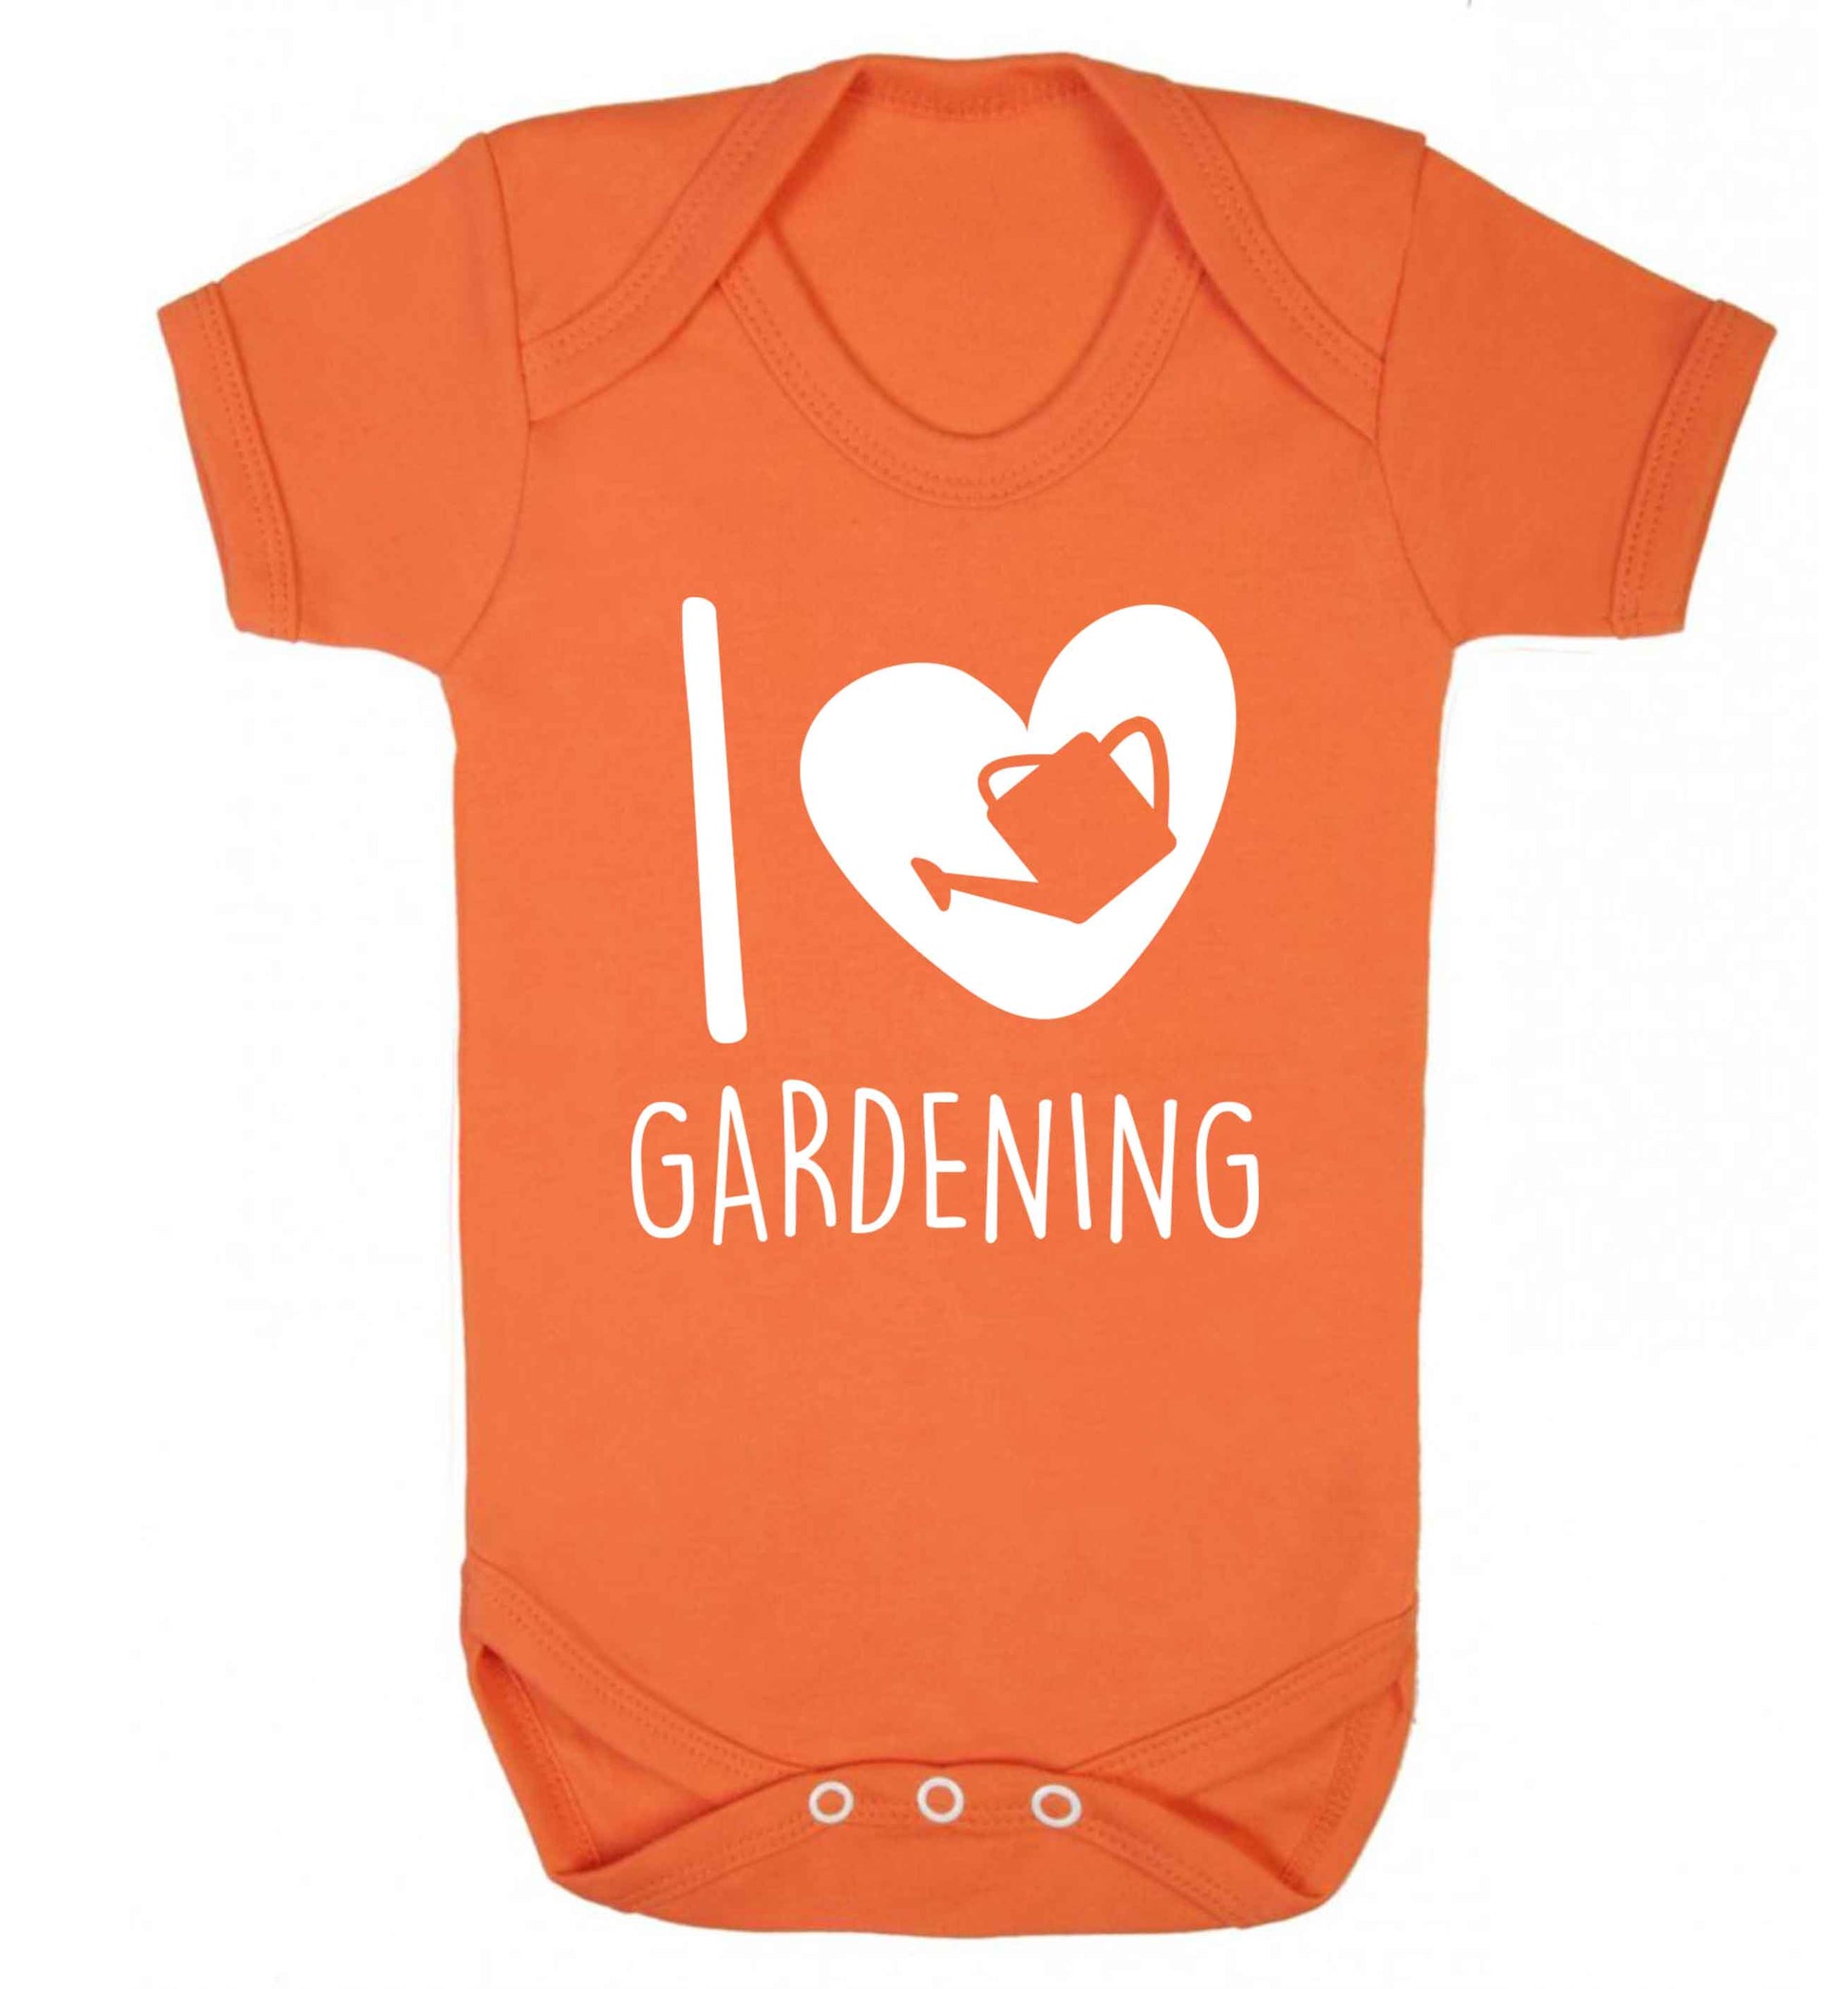 I love gardening Baby Vest orange 18-24 months